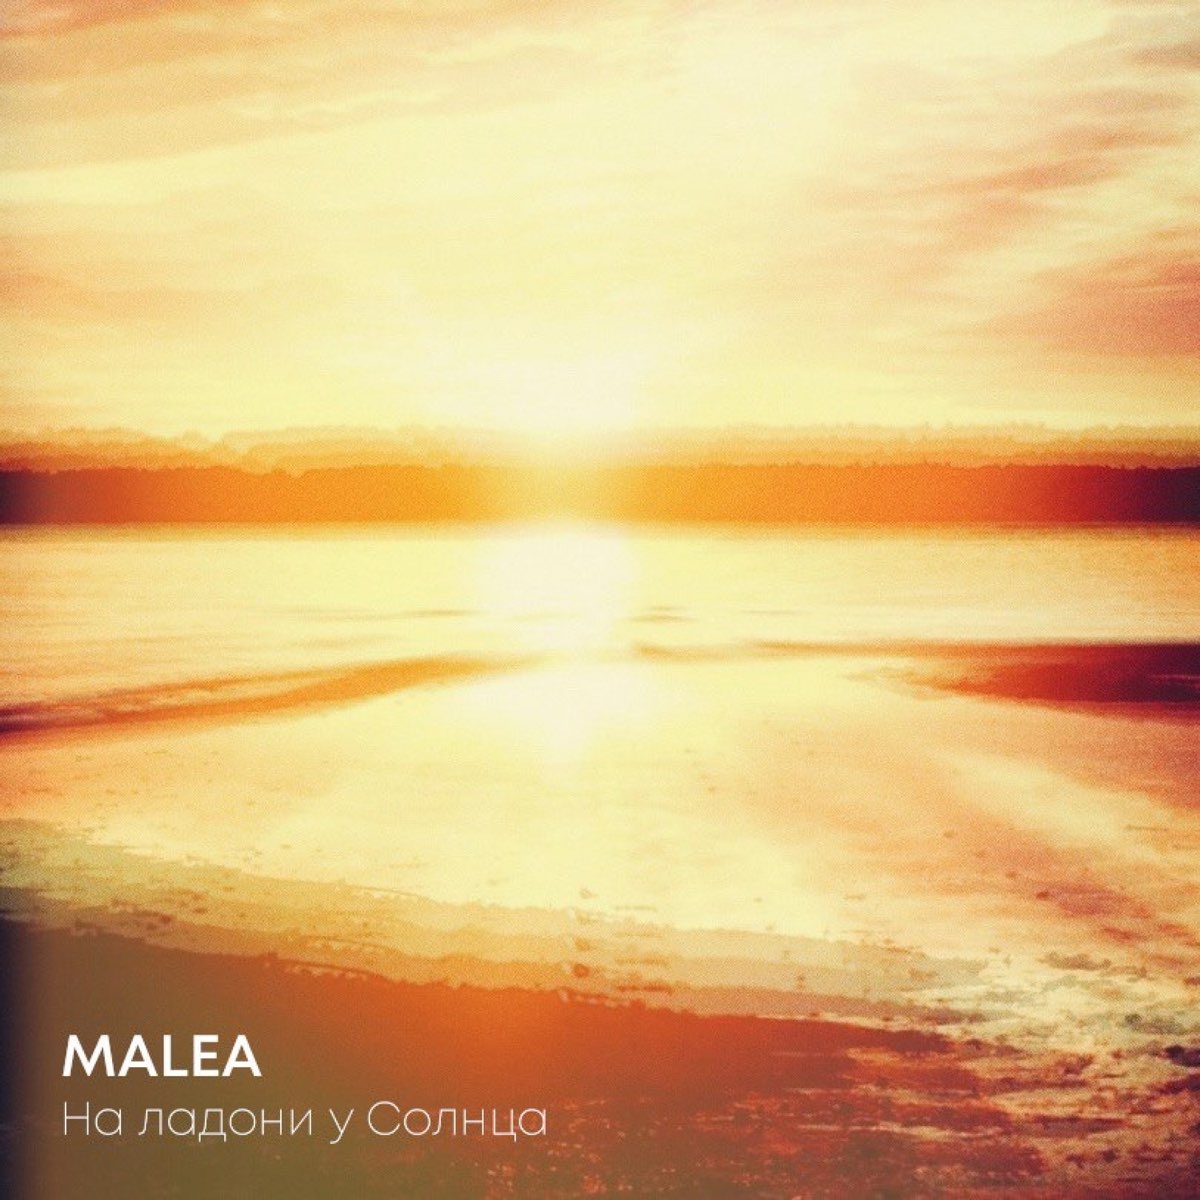 Солнце feat. Malea.